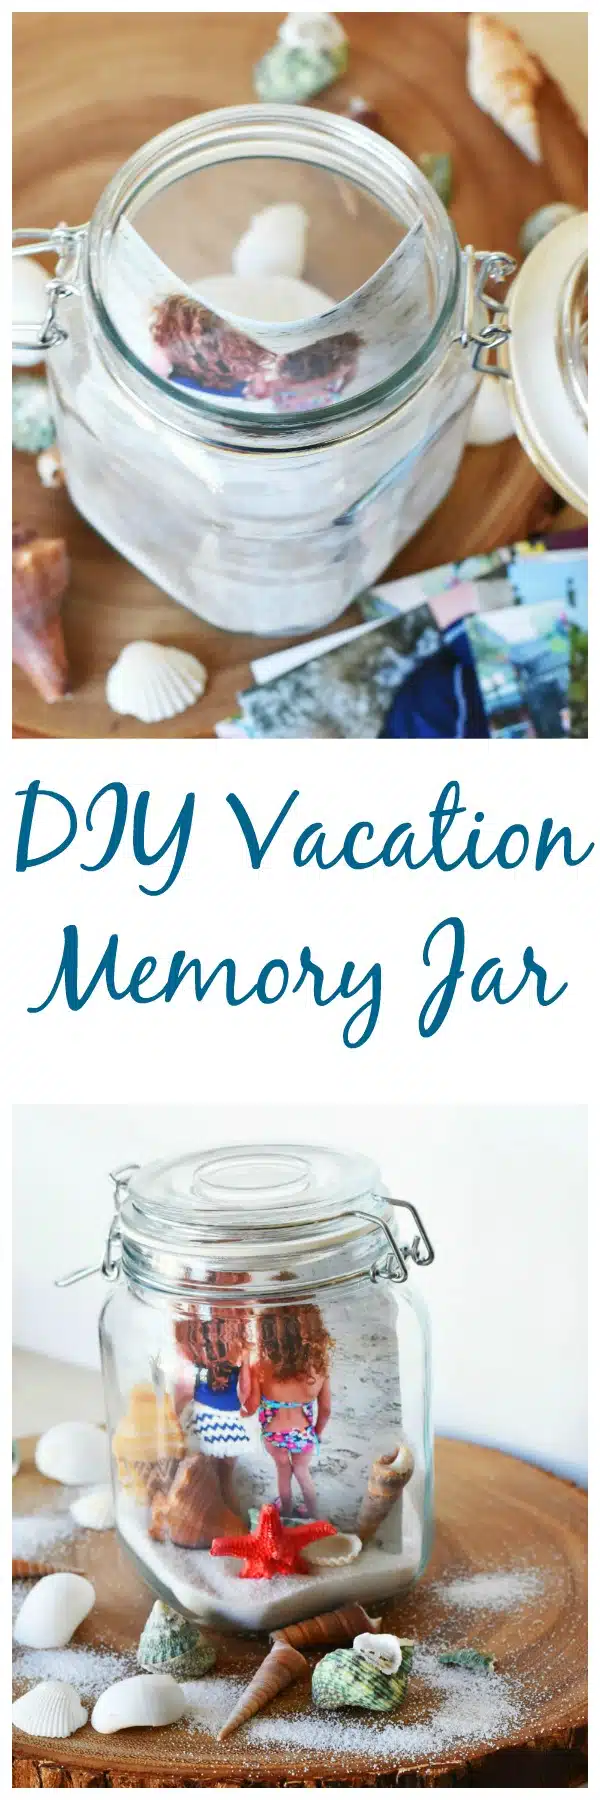 vacation-memory-jar